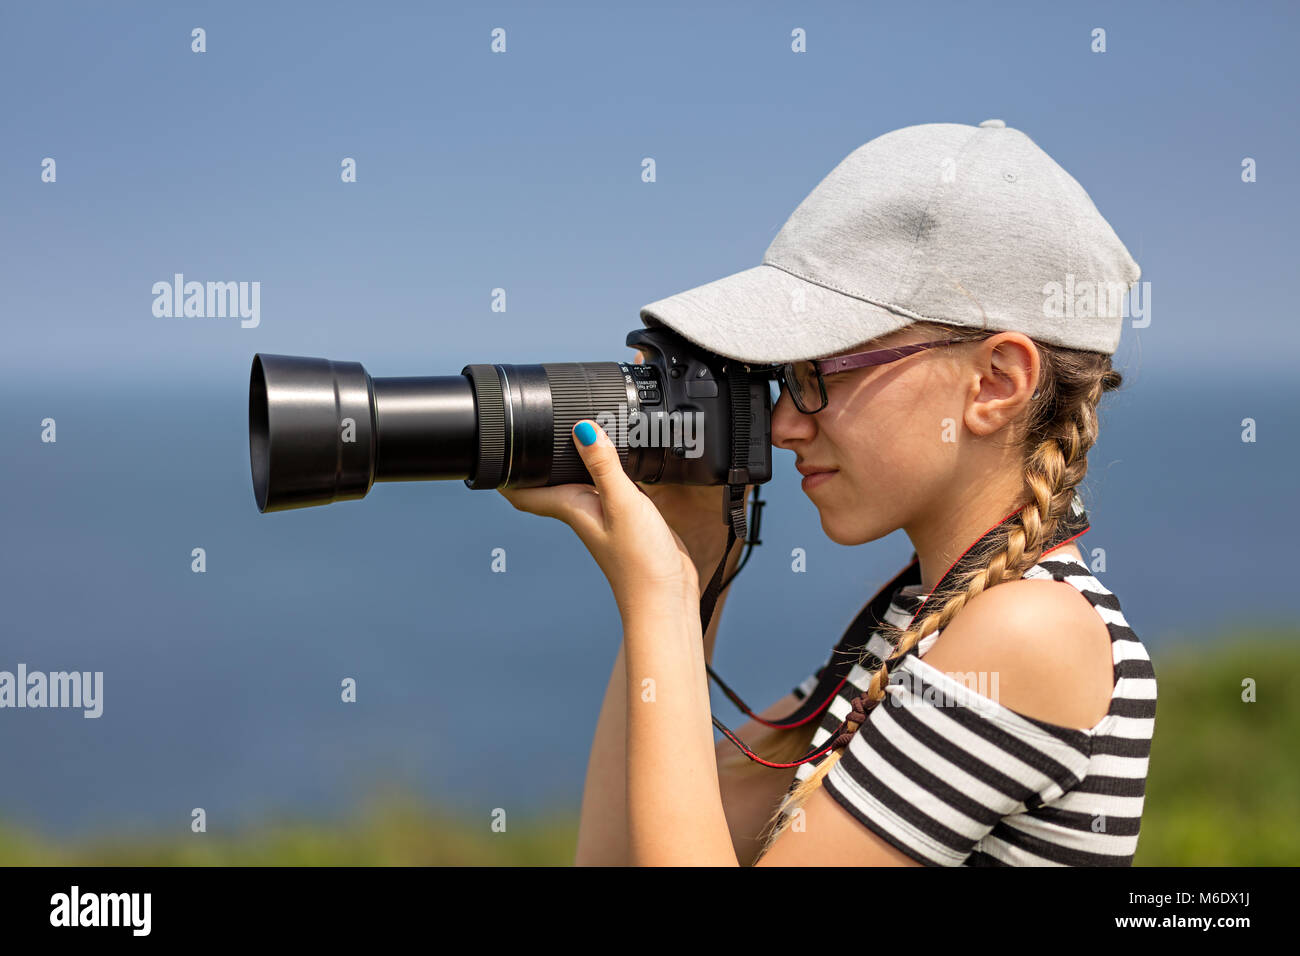 12 ans, fille, et prendre des photos avec un objectif long dans un magnifique paysage de falaises irlandaises Banque D'Images